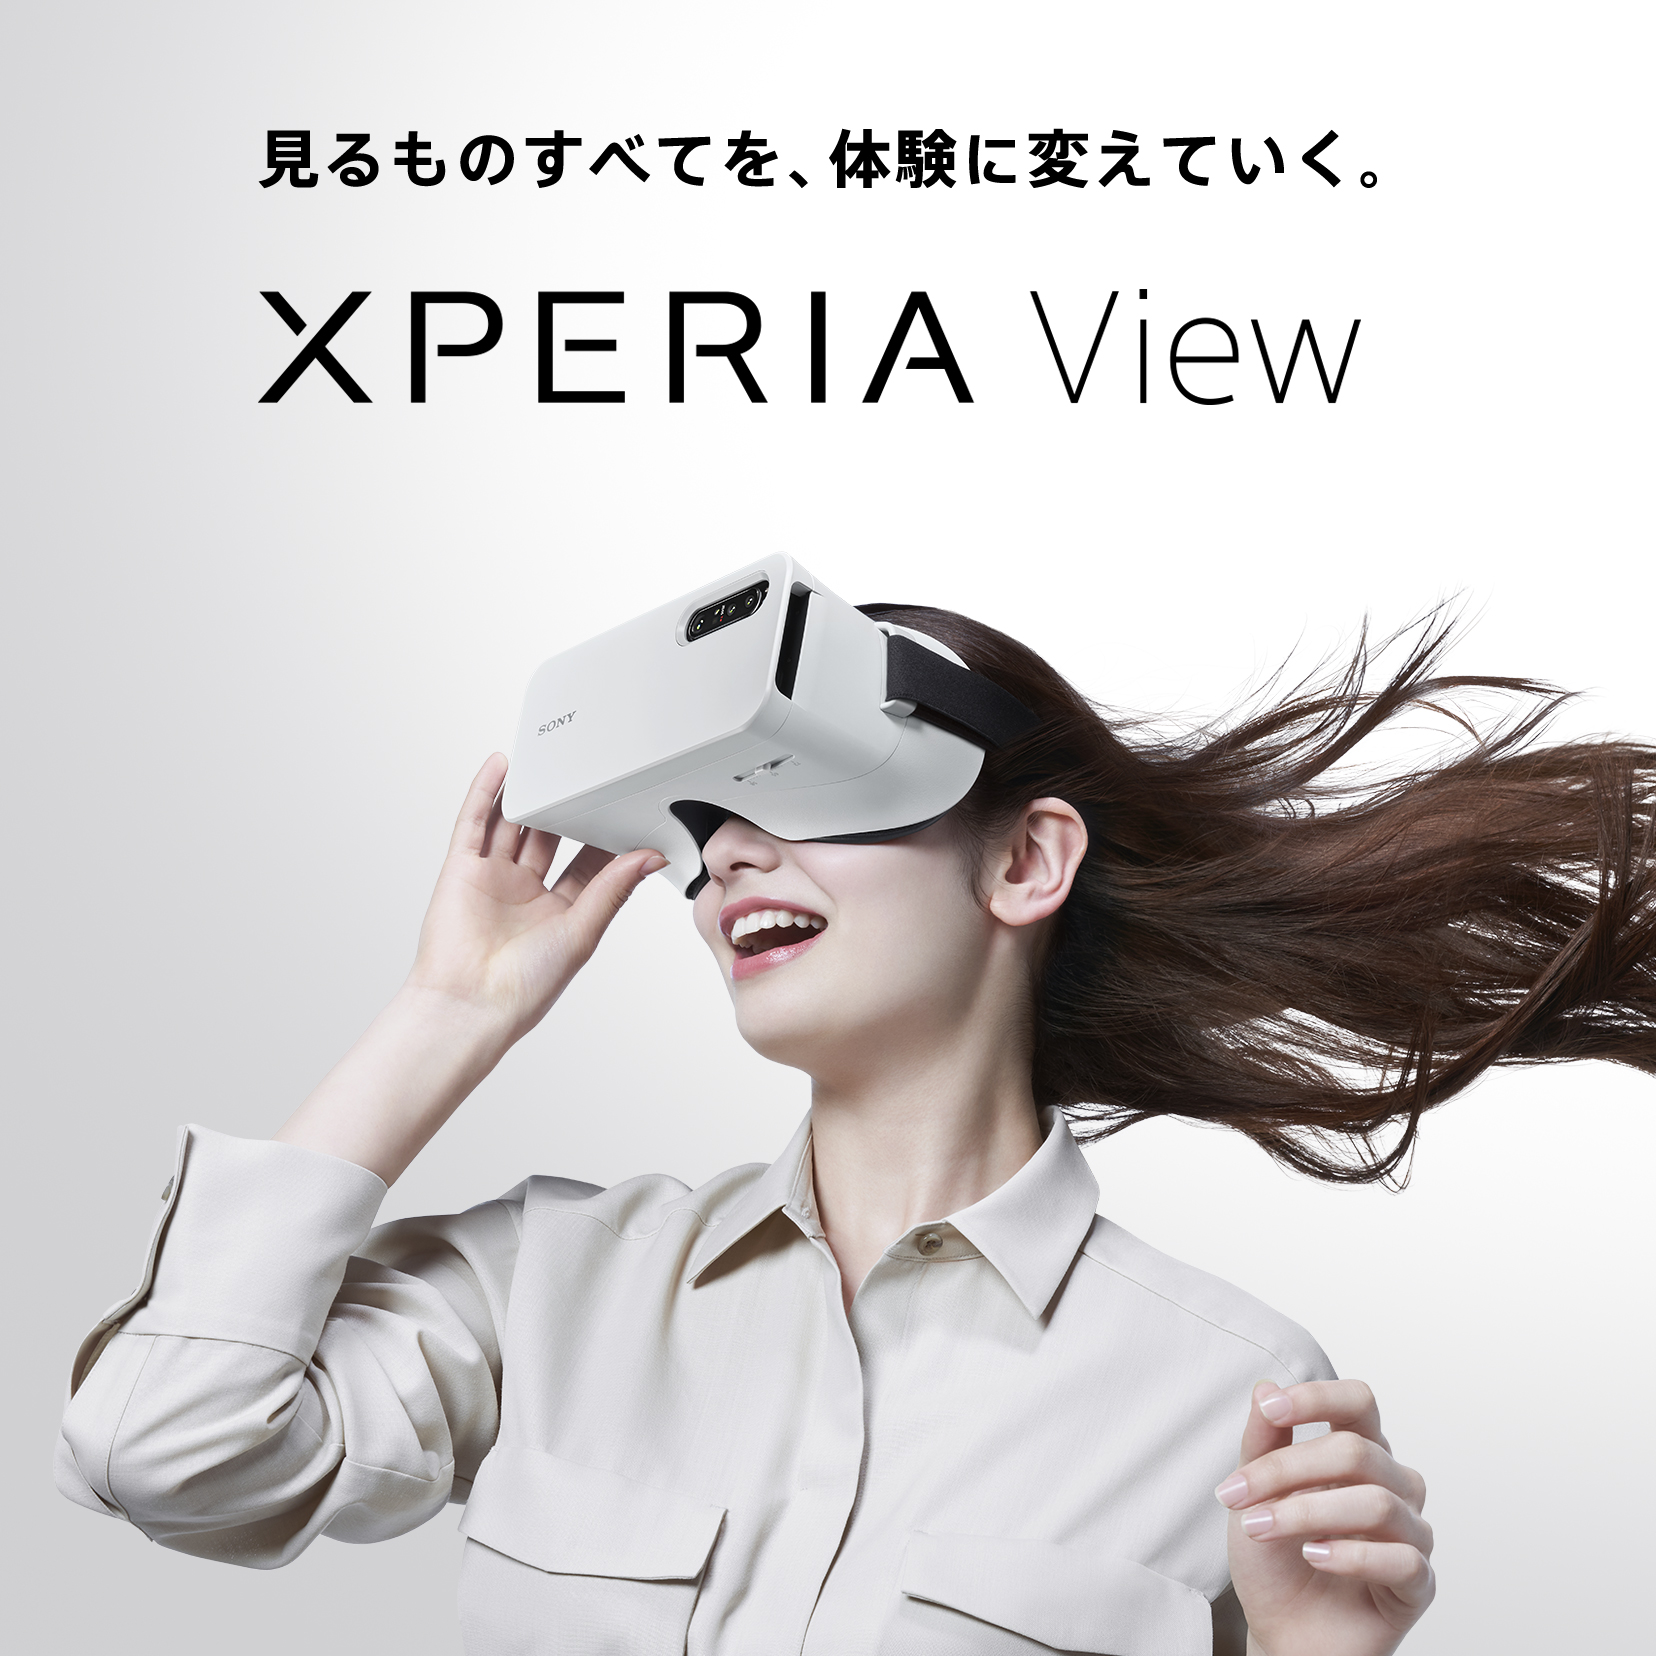 ソニー Xperia View paris-epee.fr